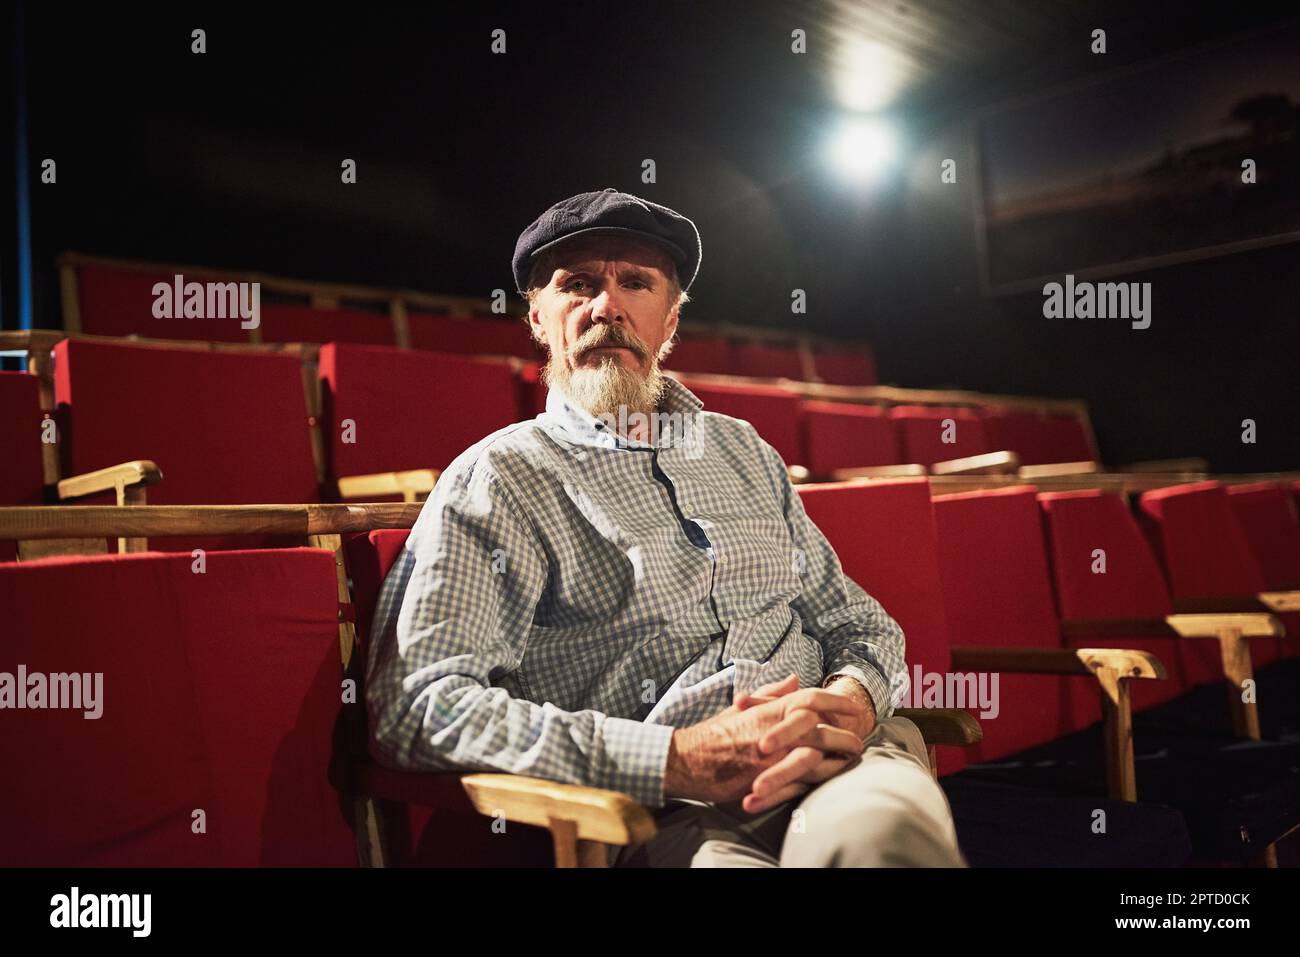 HES un cinephile condito. Ritratto di un uomo anziano sicuro seduto da solo in un cinema vuoto Foto Stock